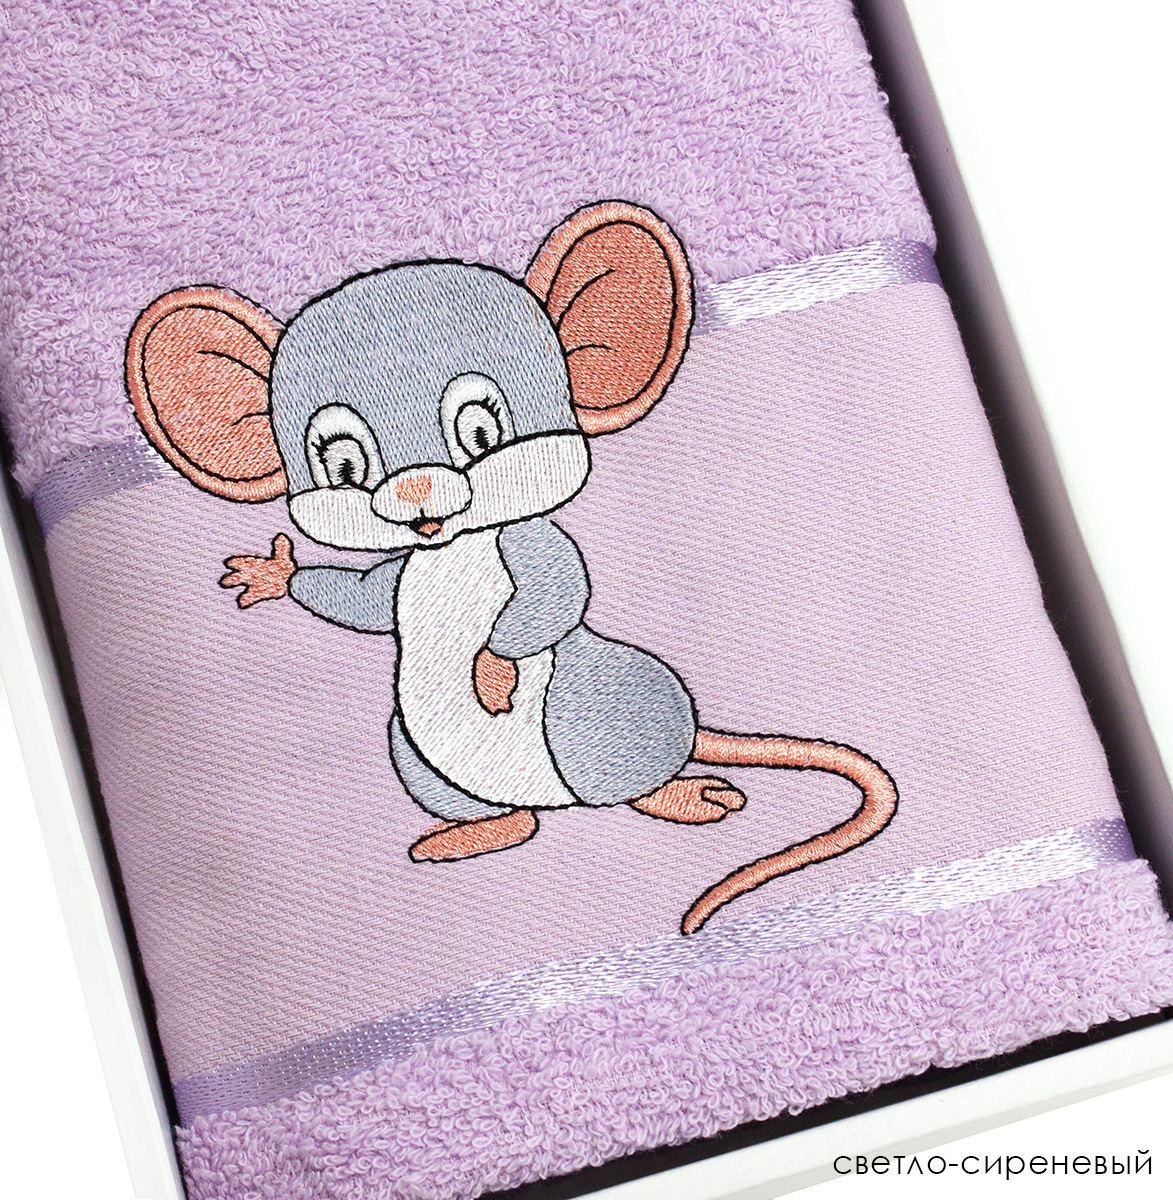 Мышь в полотенце